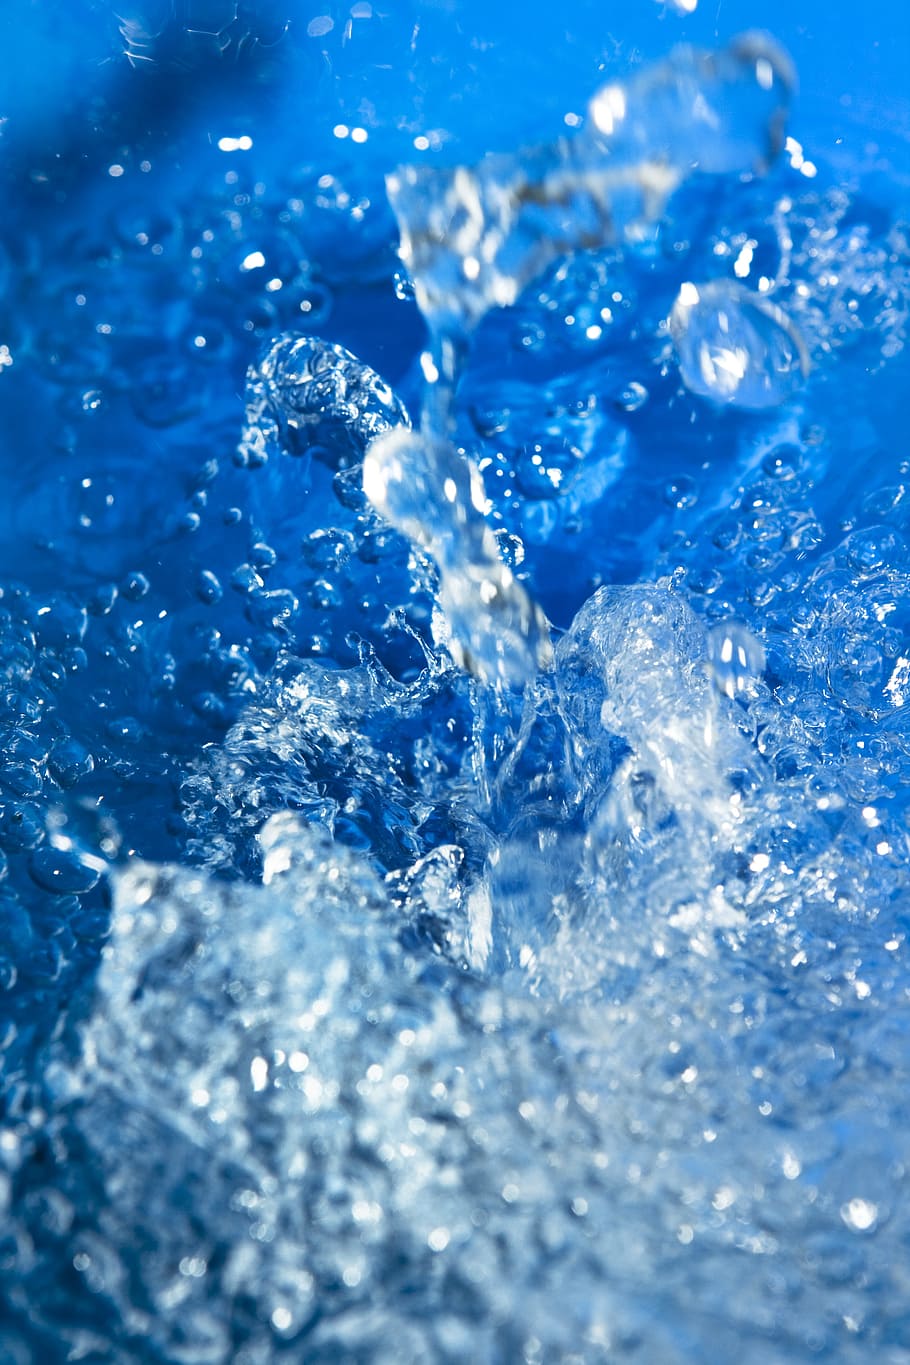 HD wallpaper: water, splash, background, bath, blue, bubble, clean, clear |  Wallpaper Flare